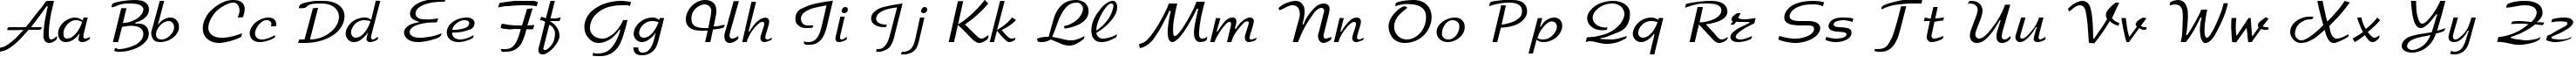 Пример написания английского алфавита шрифтом ArbatCTT